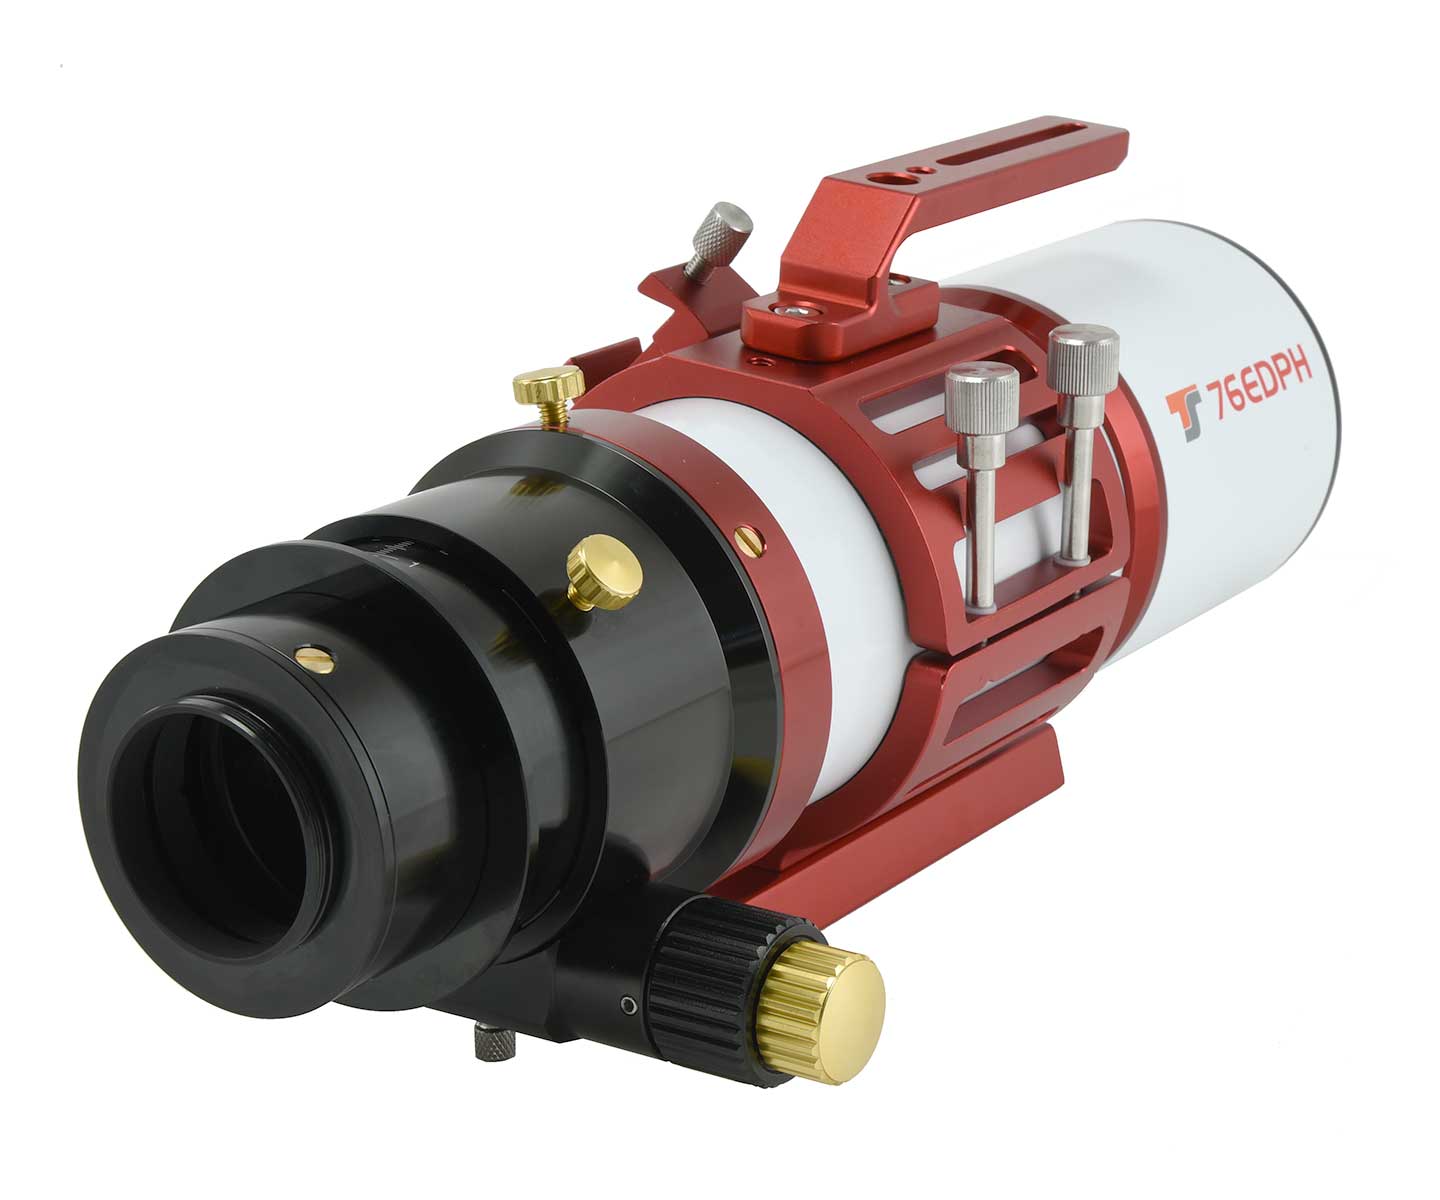  TS-Optics 76EDPH rifrattore 76mm FPL53 F/4.5 di colore rosso - Lunghezza focale 342mm - Focheggiatore 3" Rack&amp;Pinion 